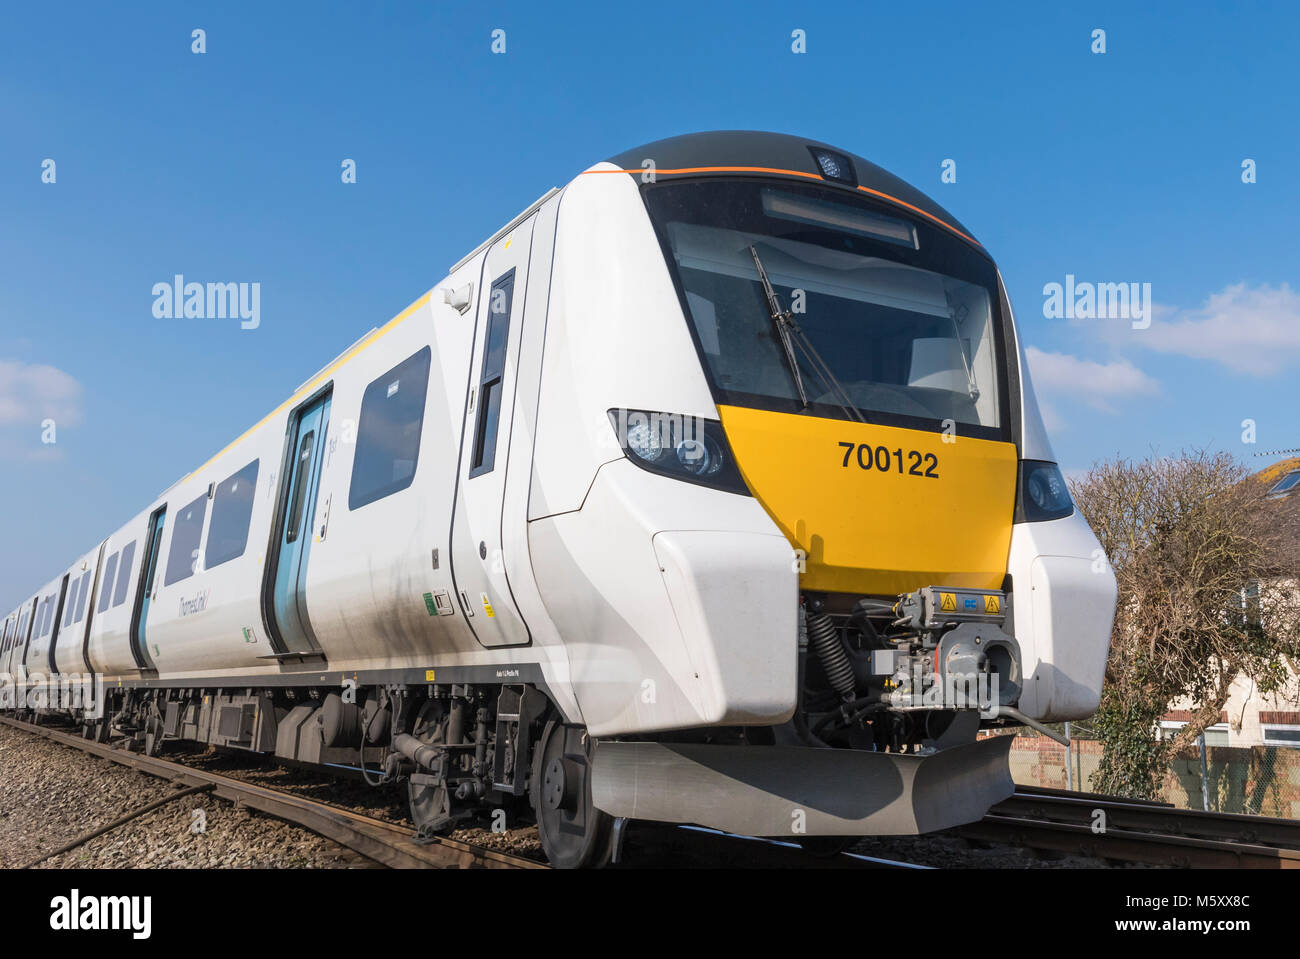 Siemens Klasse 700 Thameslink Zug, eine neue High-Tech-britischen Zug den Thameslink Netzwerk im Süden von England, Großbritannien. GTR. Govia. Stockfoto